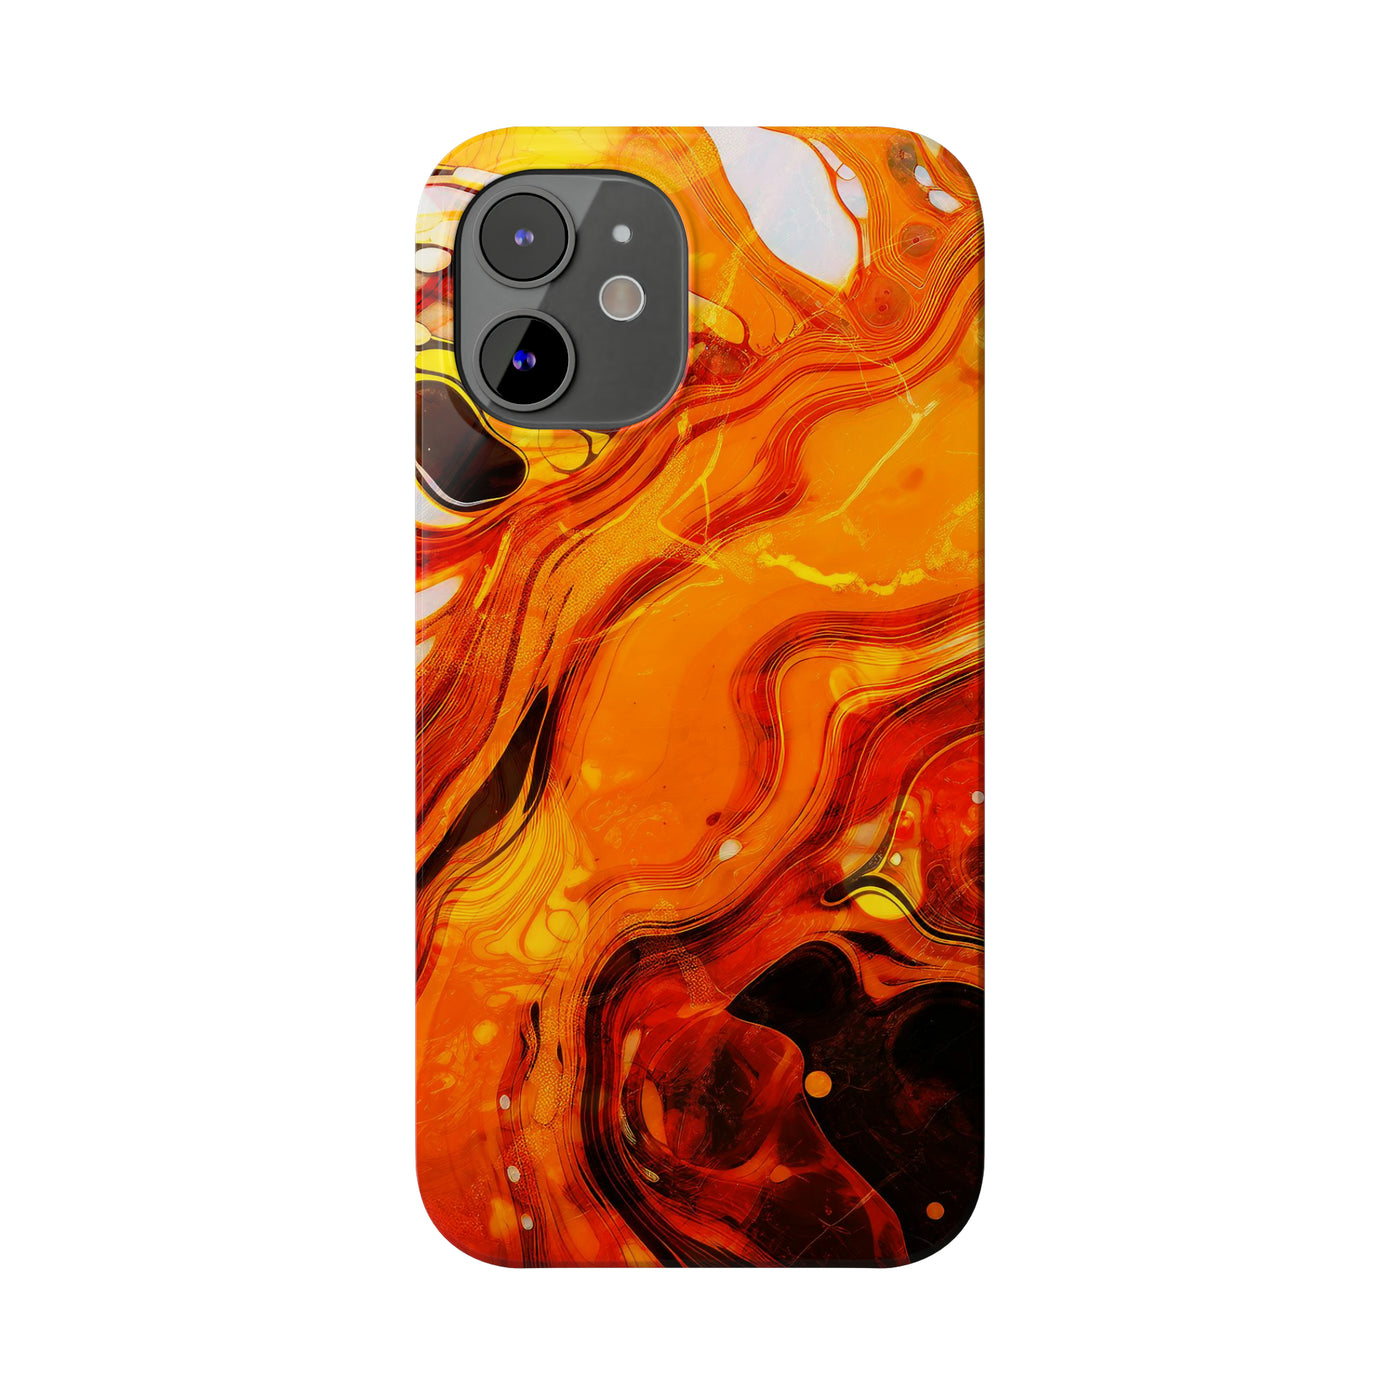 Slim Cute iPhone Cases - | iPhone 15 Case | iPhone 15 Pro Max Case, Iphone 14 Case, Iphone 14 Pro Max, Iphone 13, Marble Orange Yellow